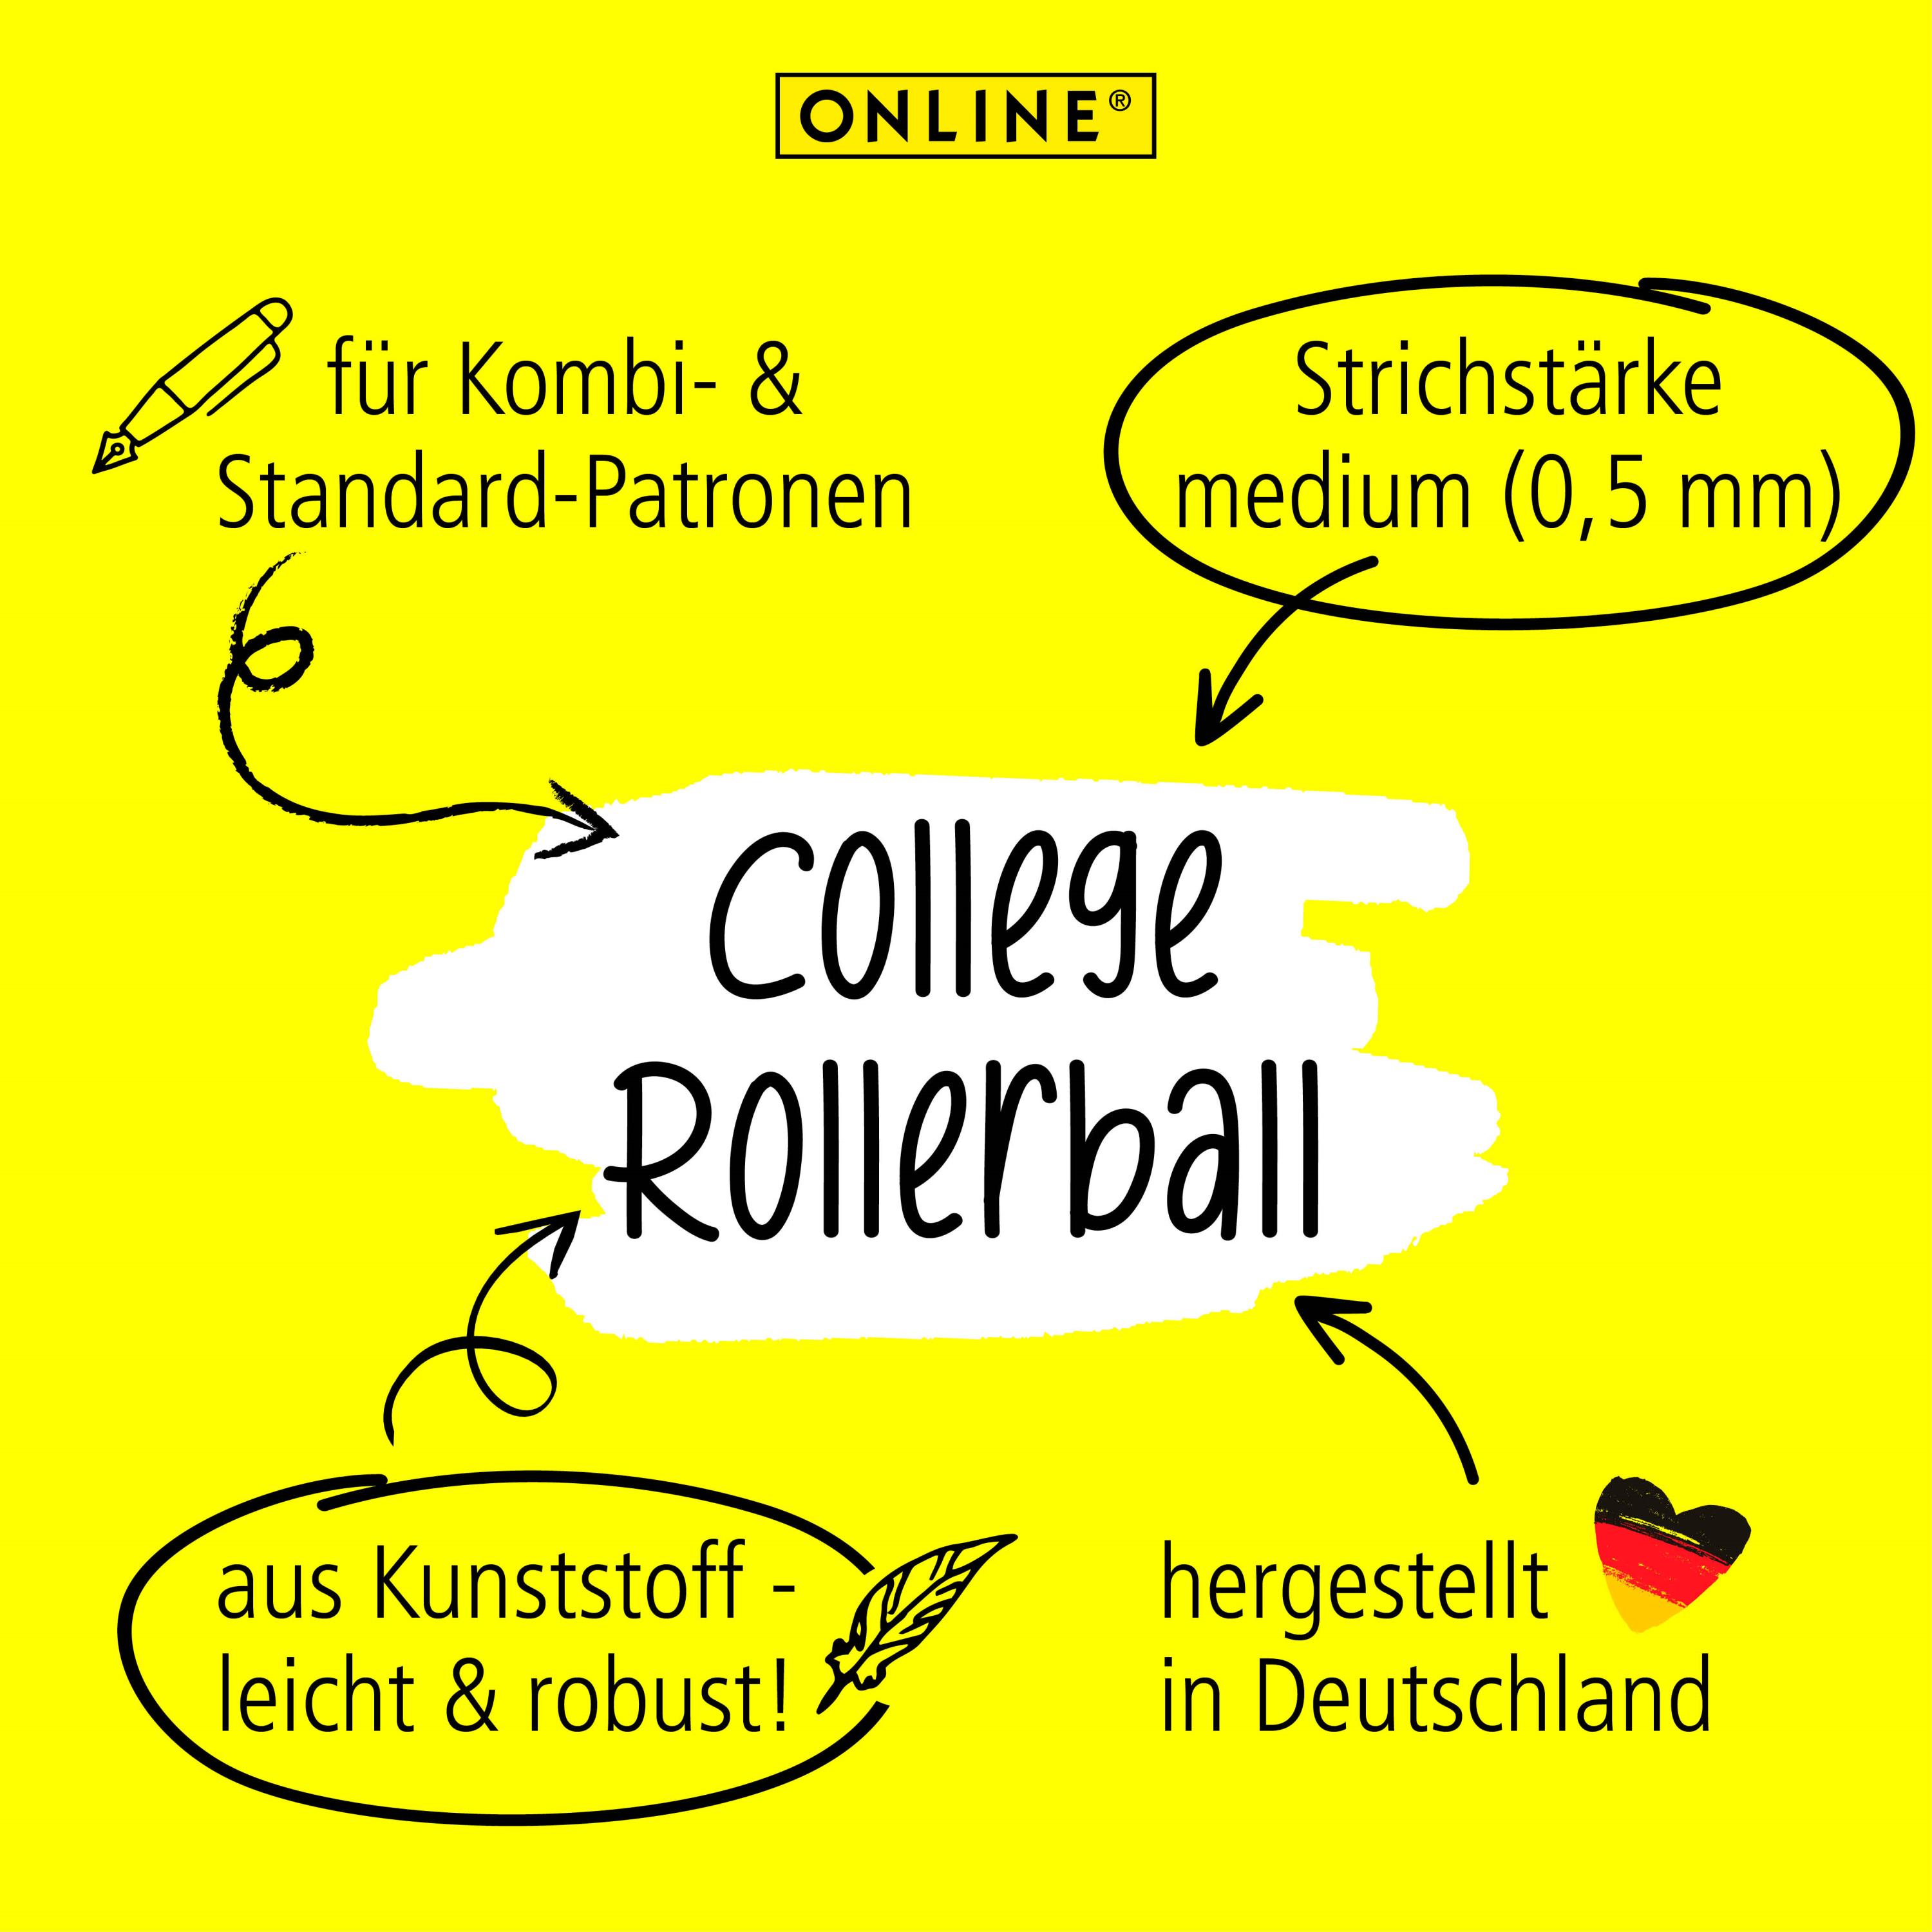 Der Rollerball ist geeignet für Standard- und Kombi-Patronen und wird von uns in Deutschland hergest